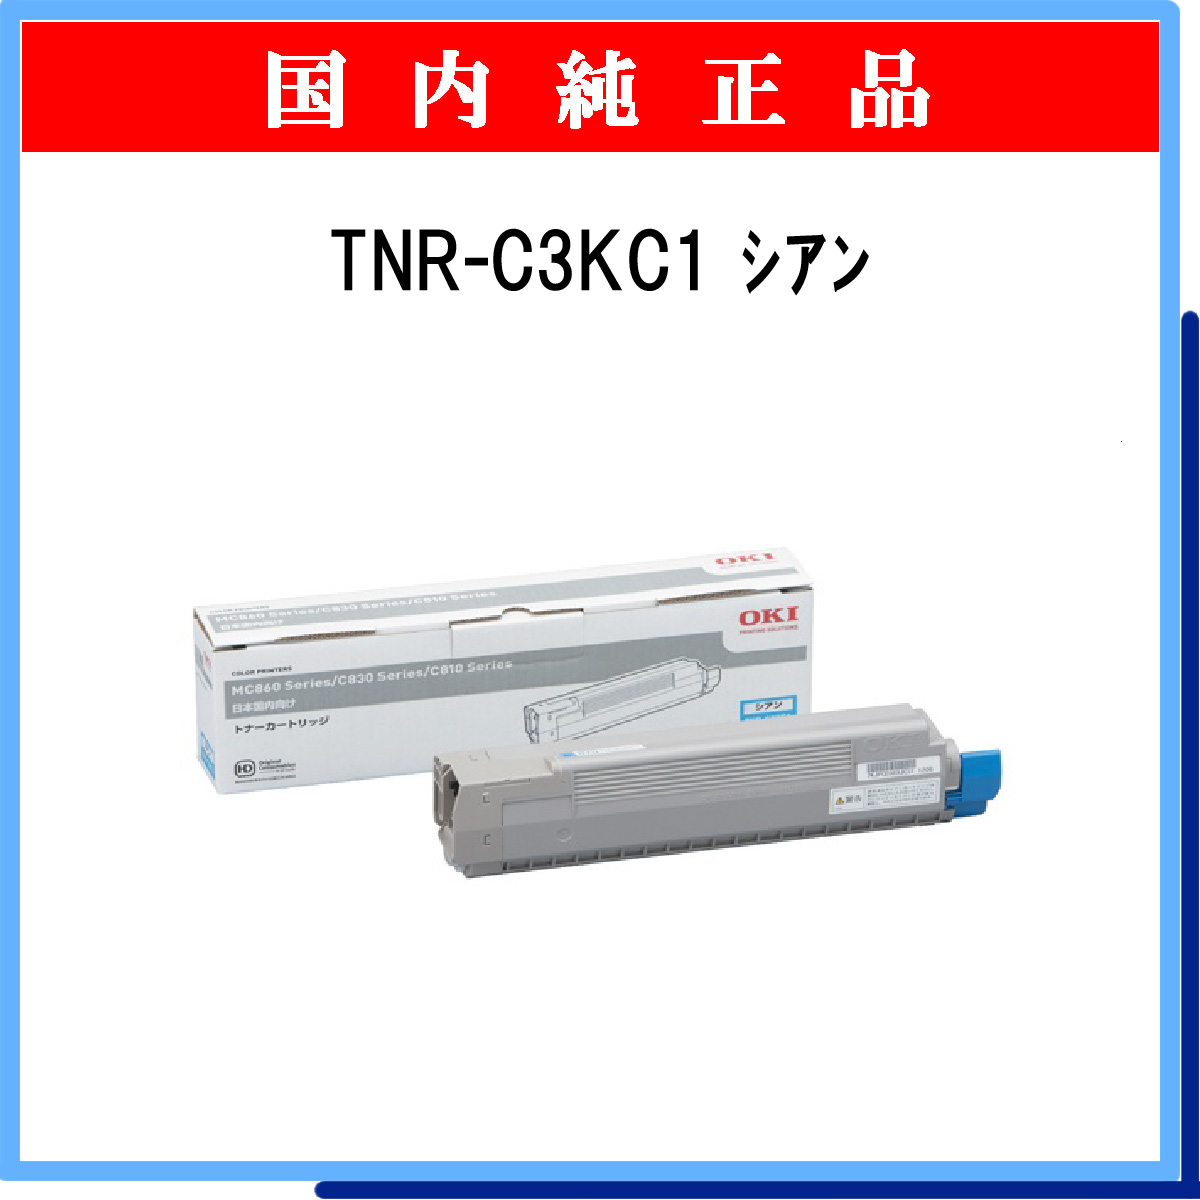 TNR-C3KC1 (大容量) 純正